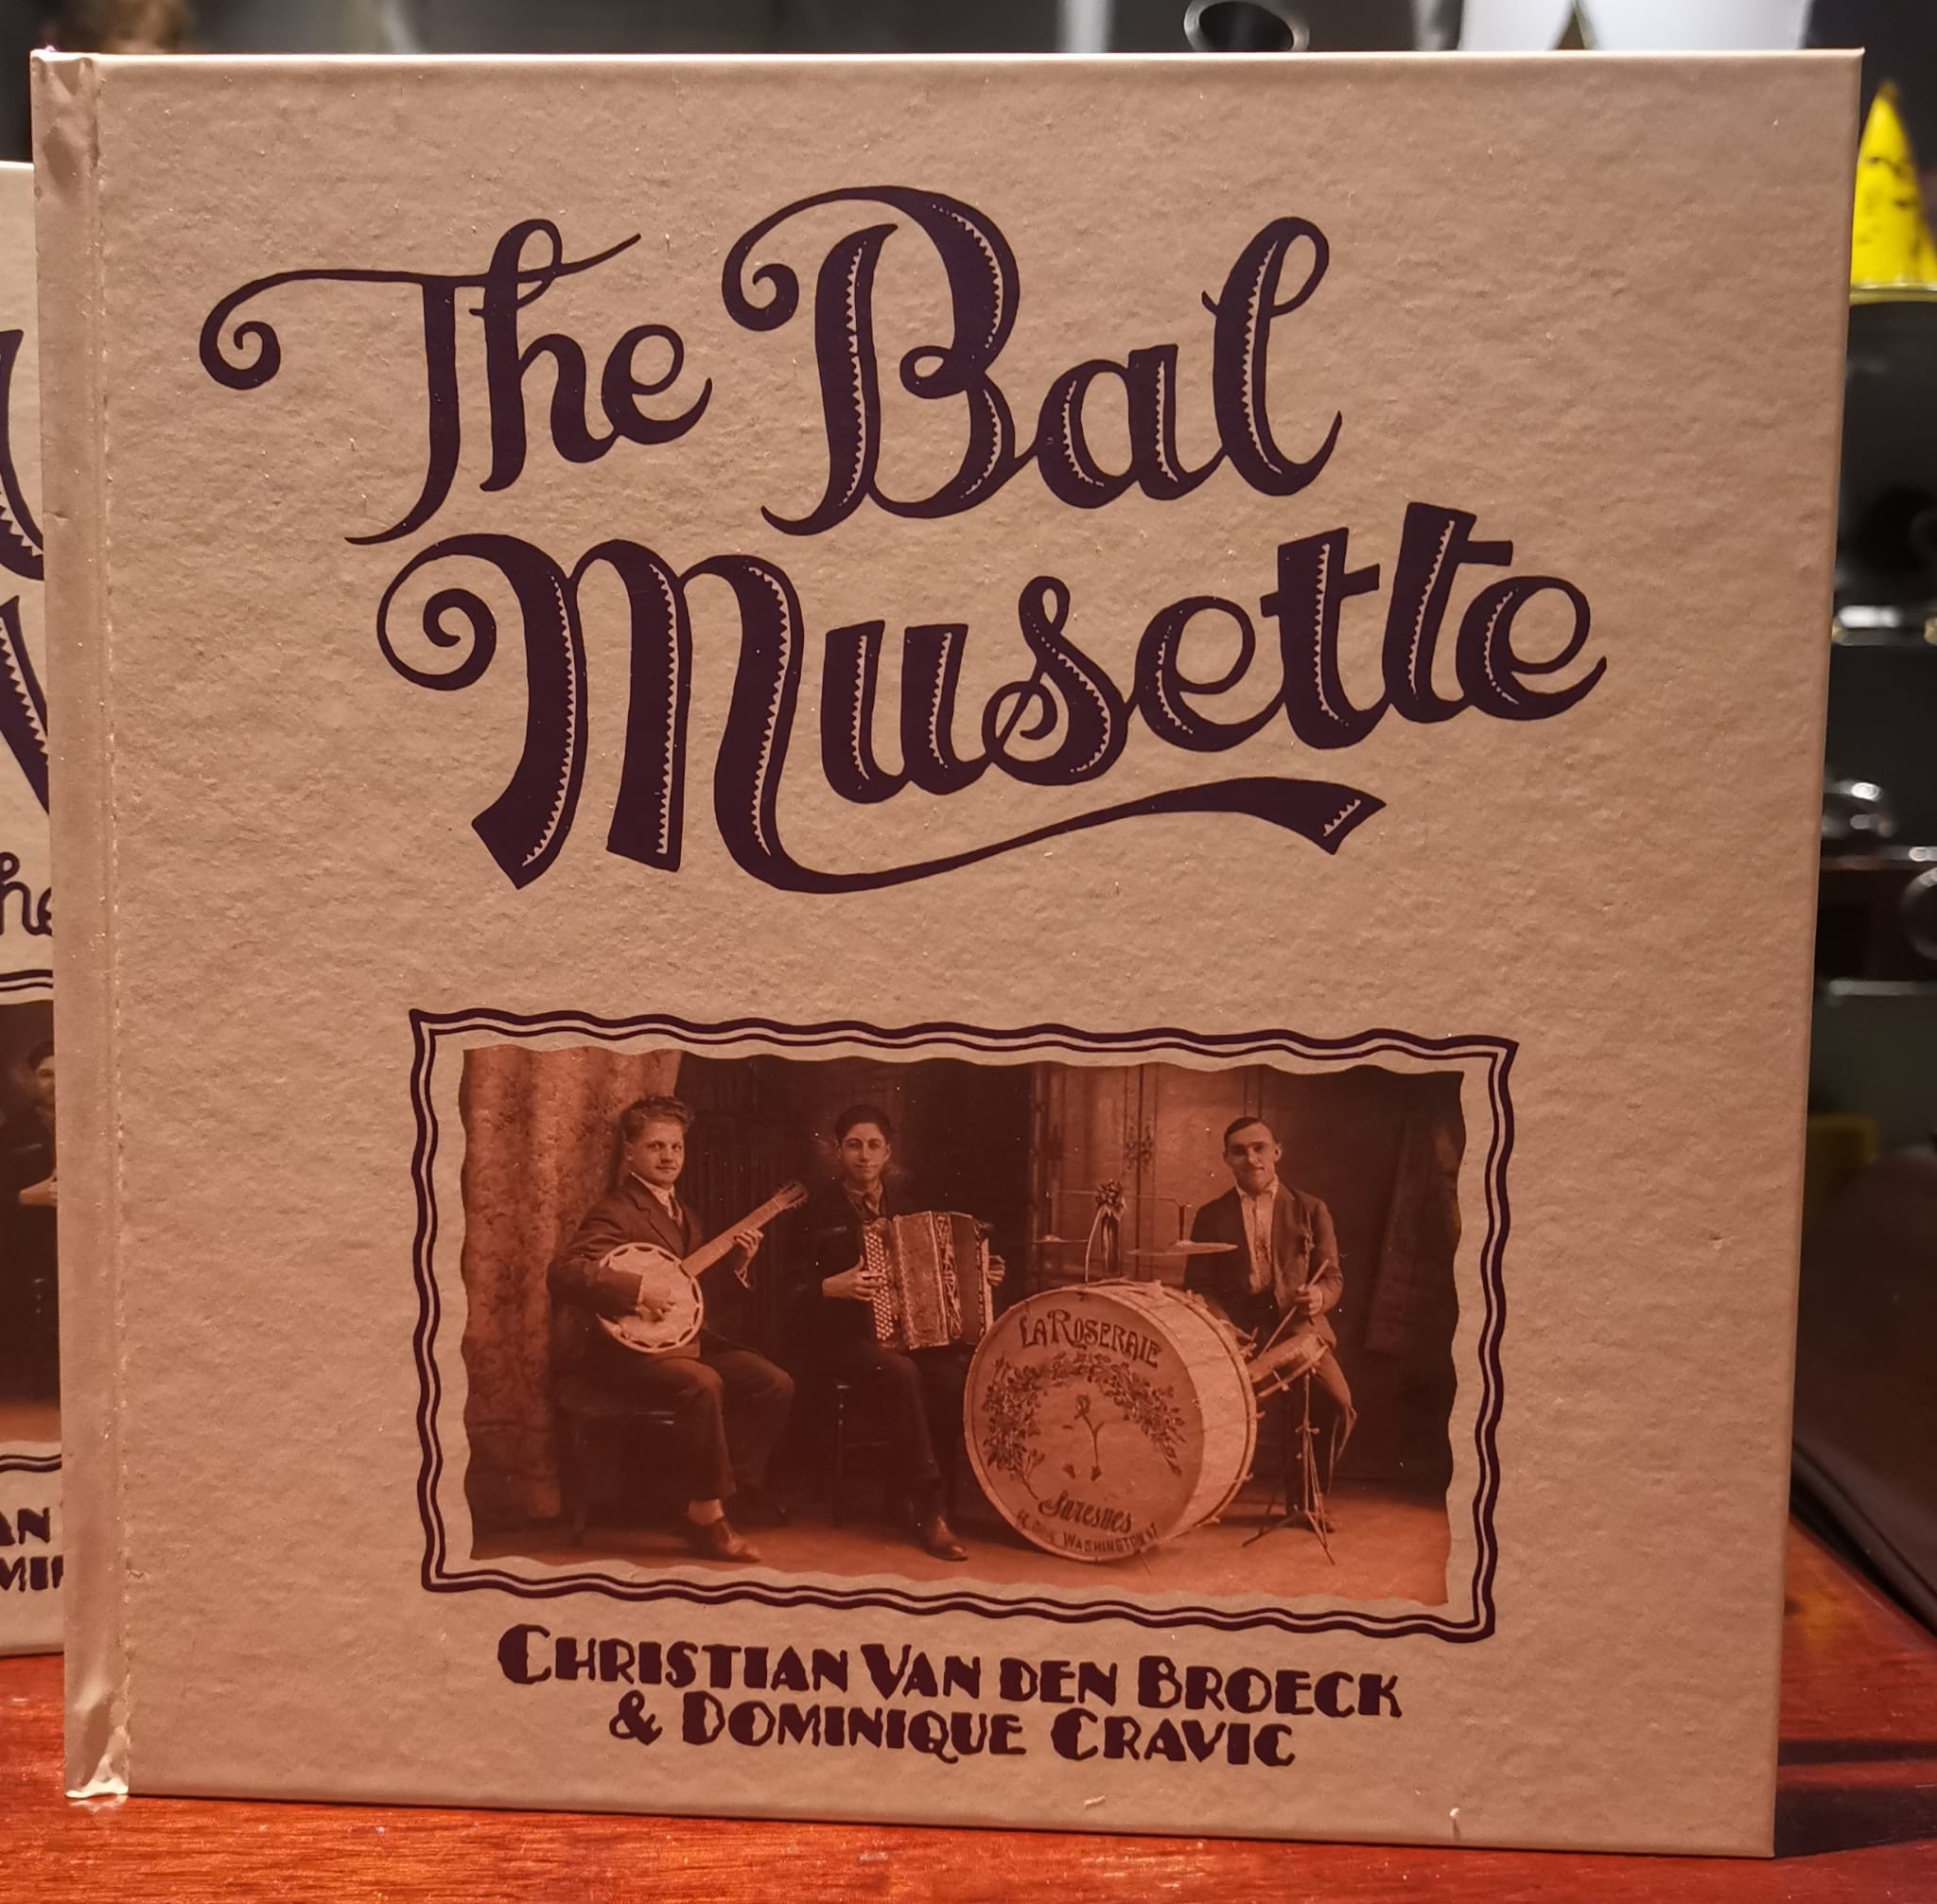 Batterie Jazz musette - Collections du Musée de la musique